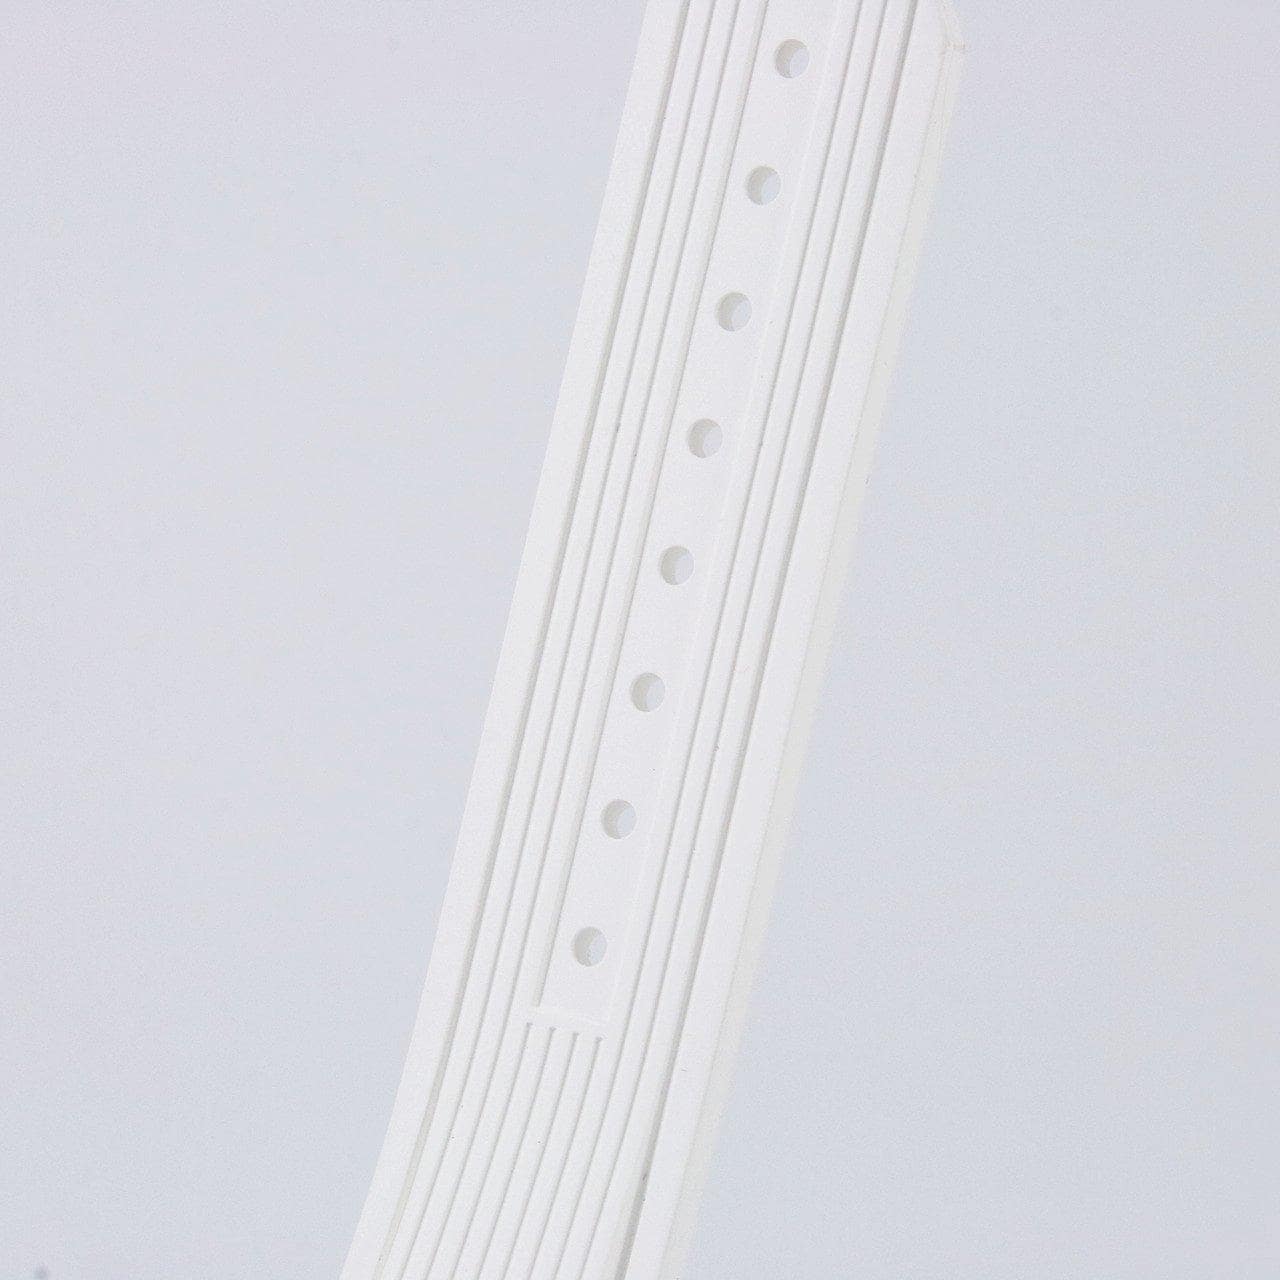 【新品】ウブロ ビッグバンワンクリックスチールホワイトパヴェ 485.SE.2010.RW.1604 SS 自動巻